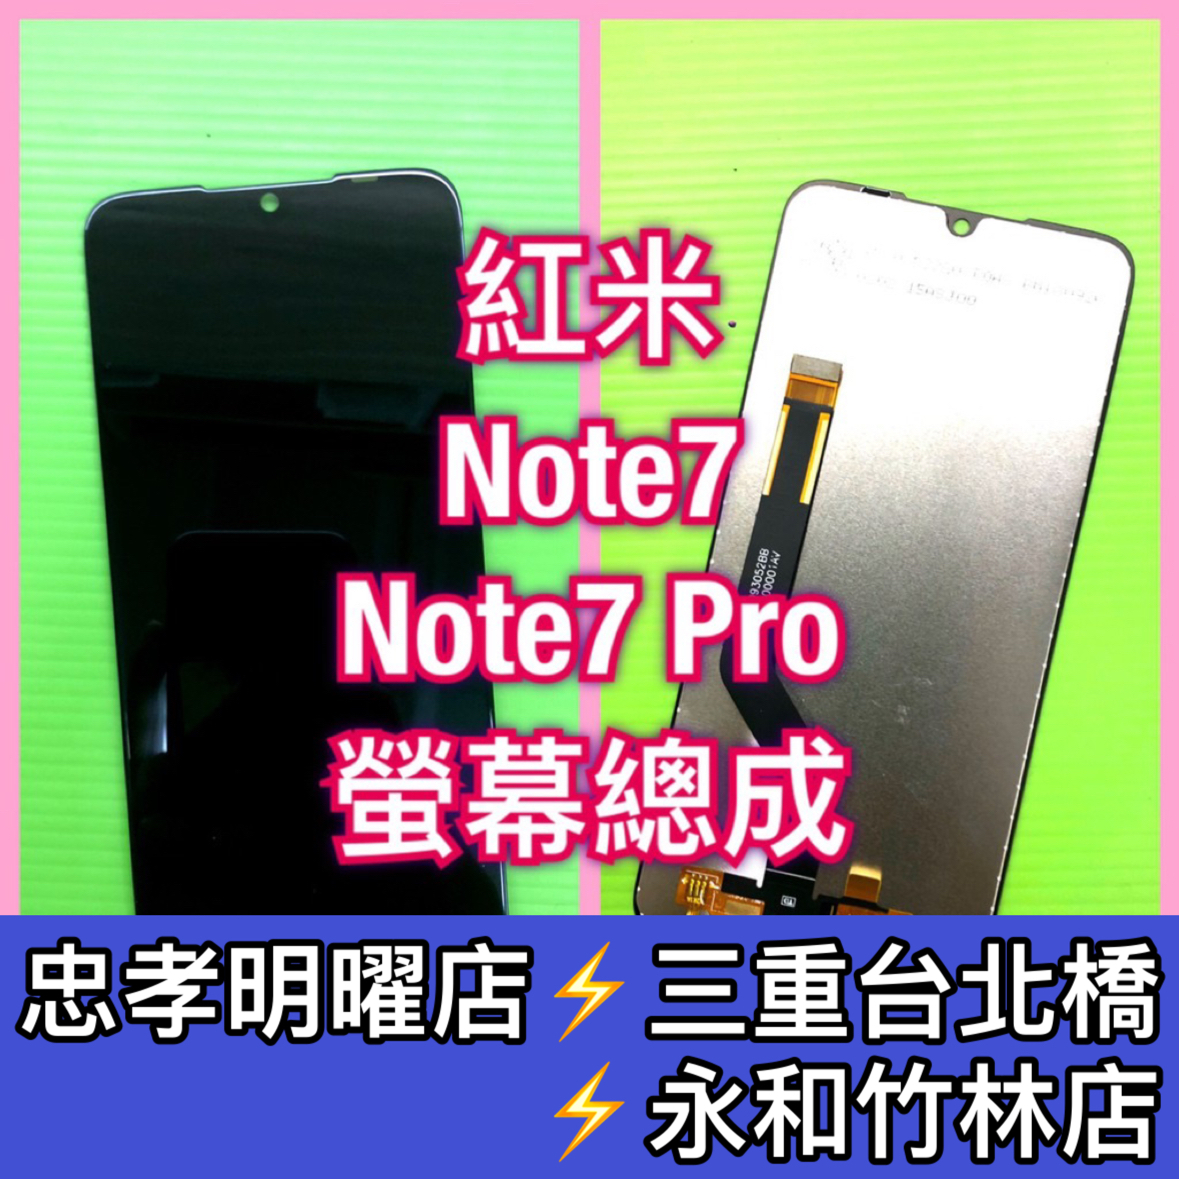 紅米 Note7 PRO 螢幕總成 紅米Note7Pro 螢幕 換螢幕 螢幕維修更換